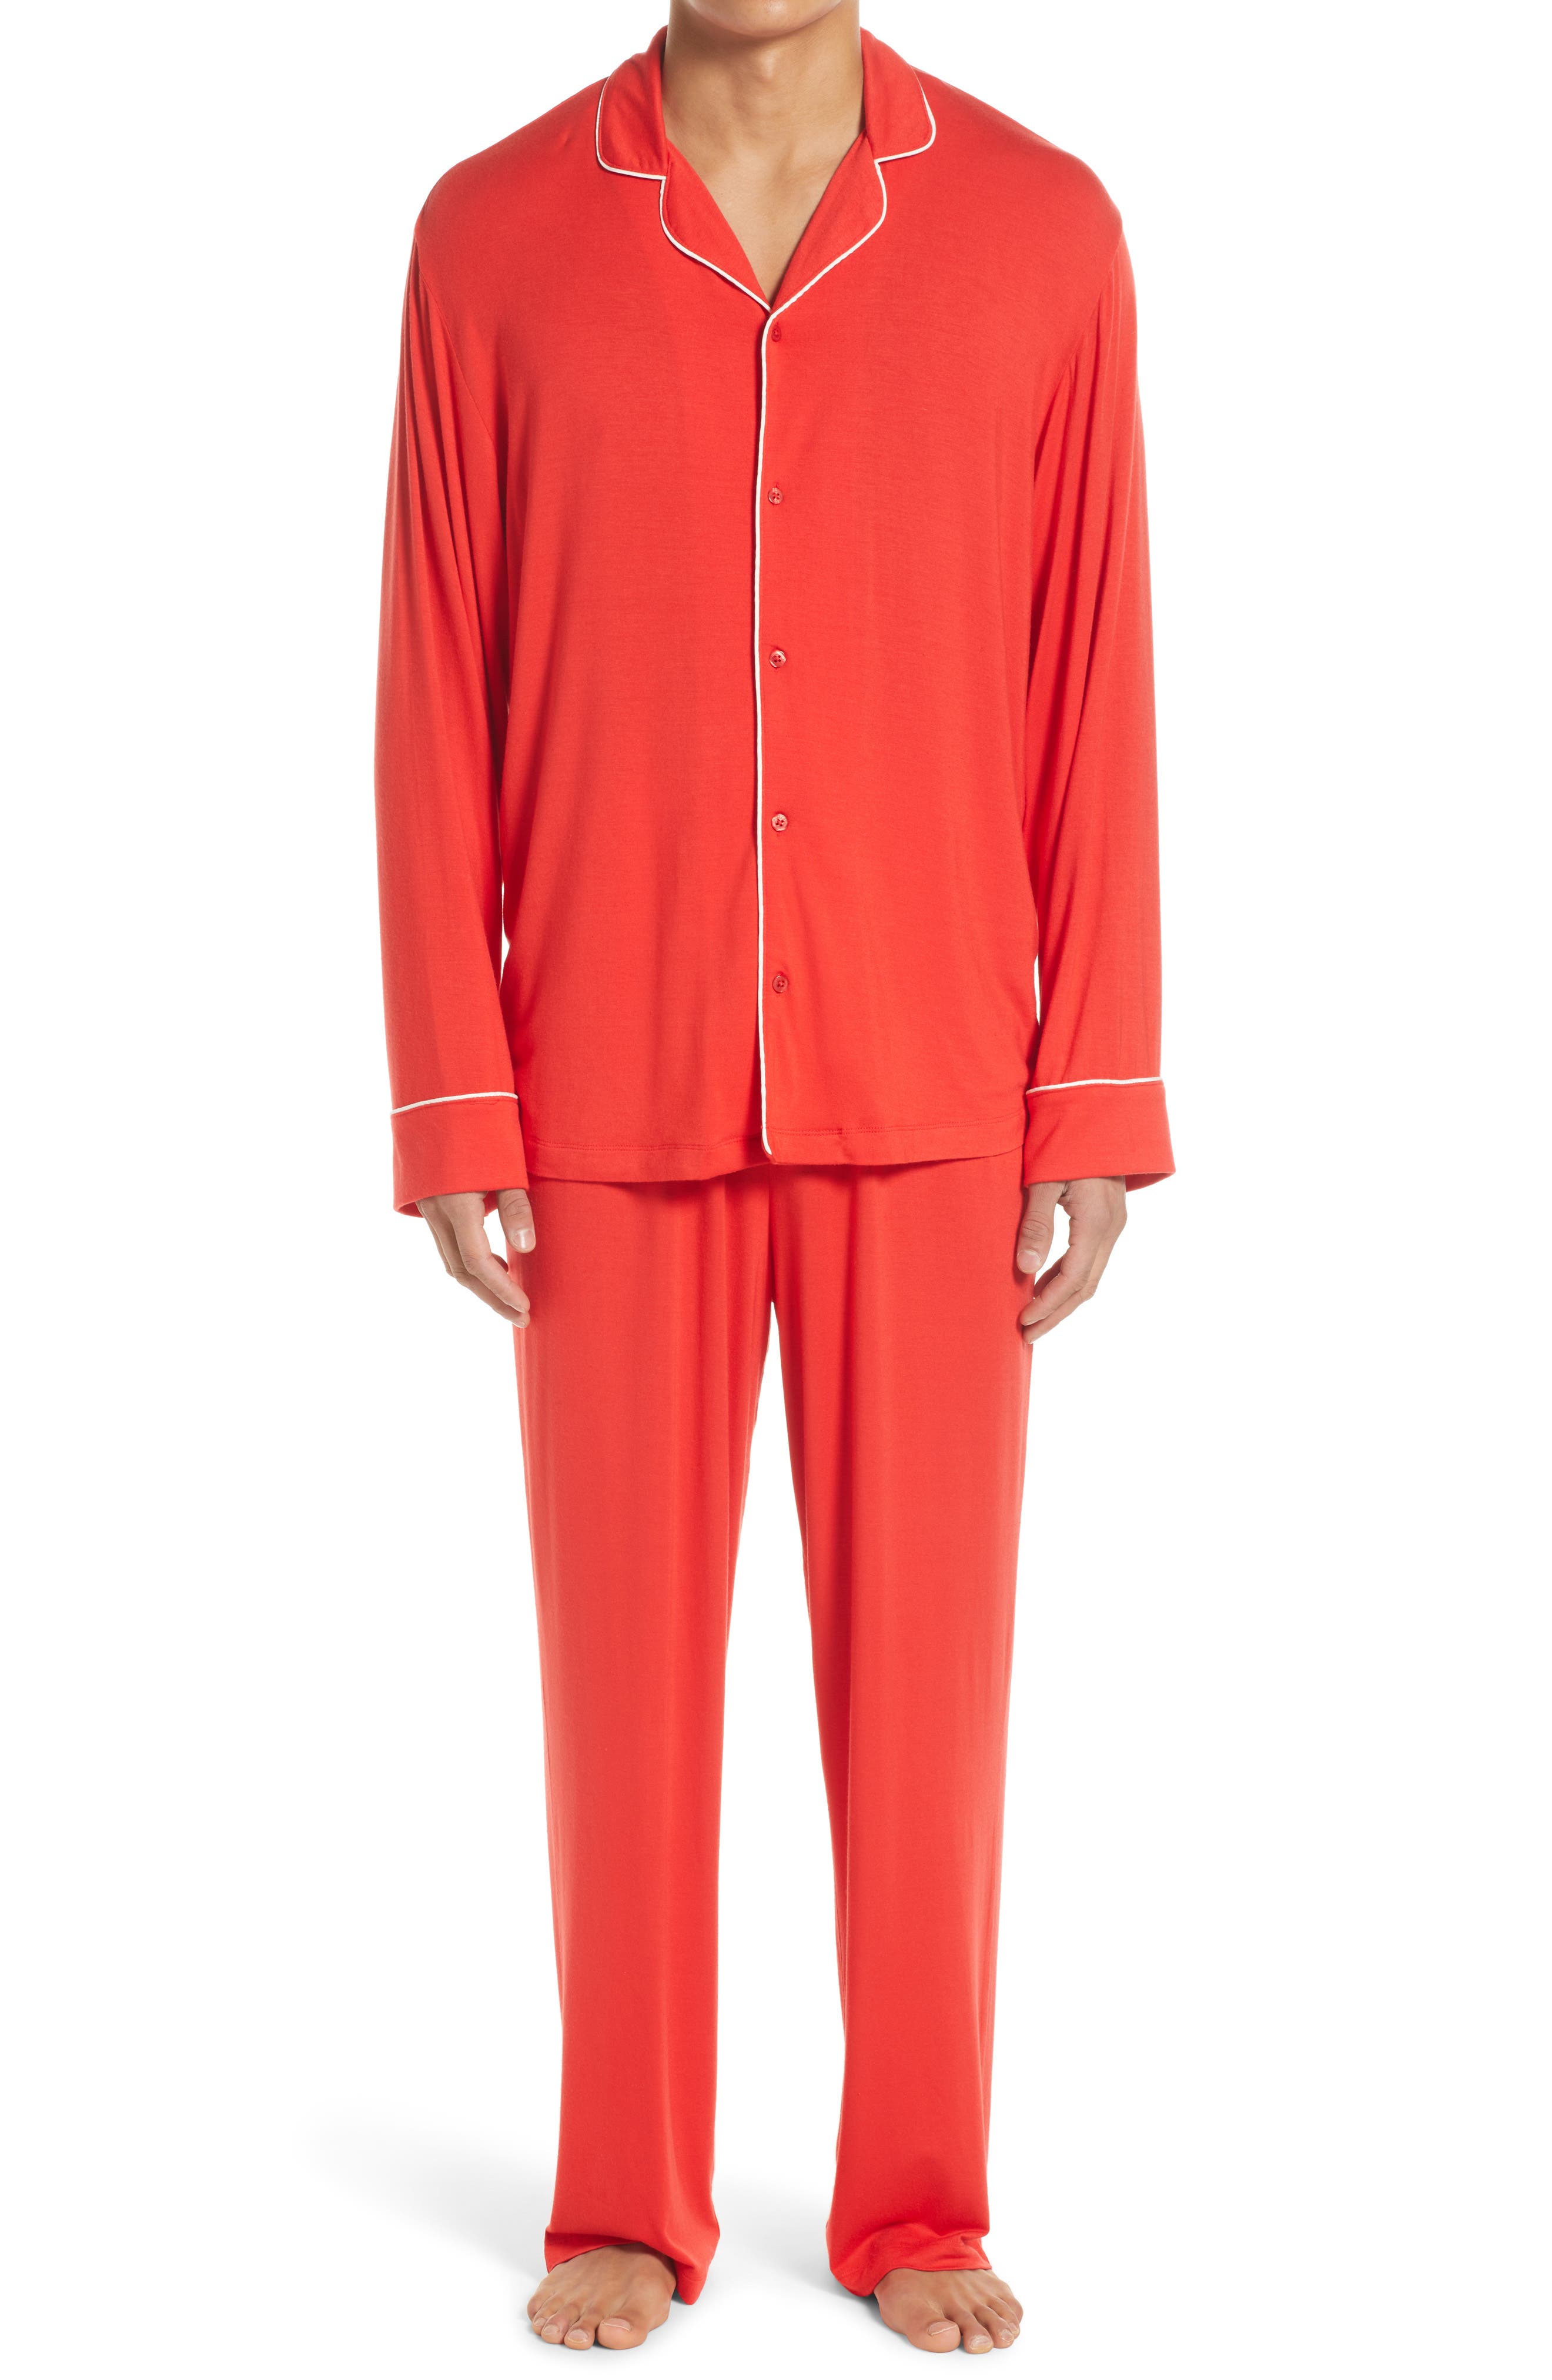 Men's Red Pajamas, Loungewear ☀ Robes ...